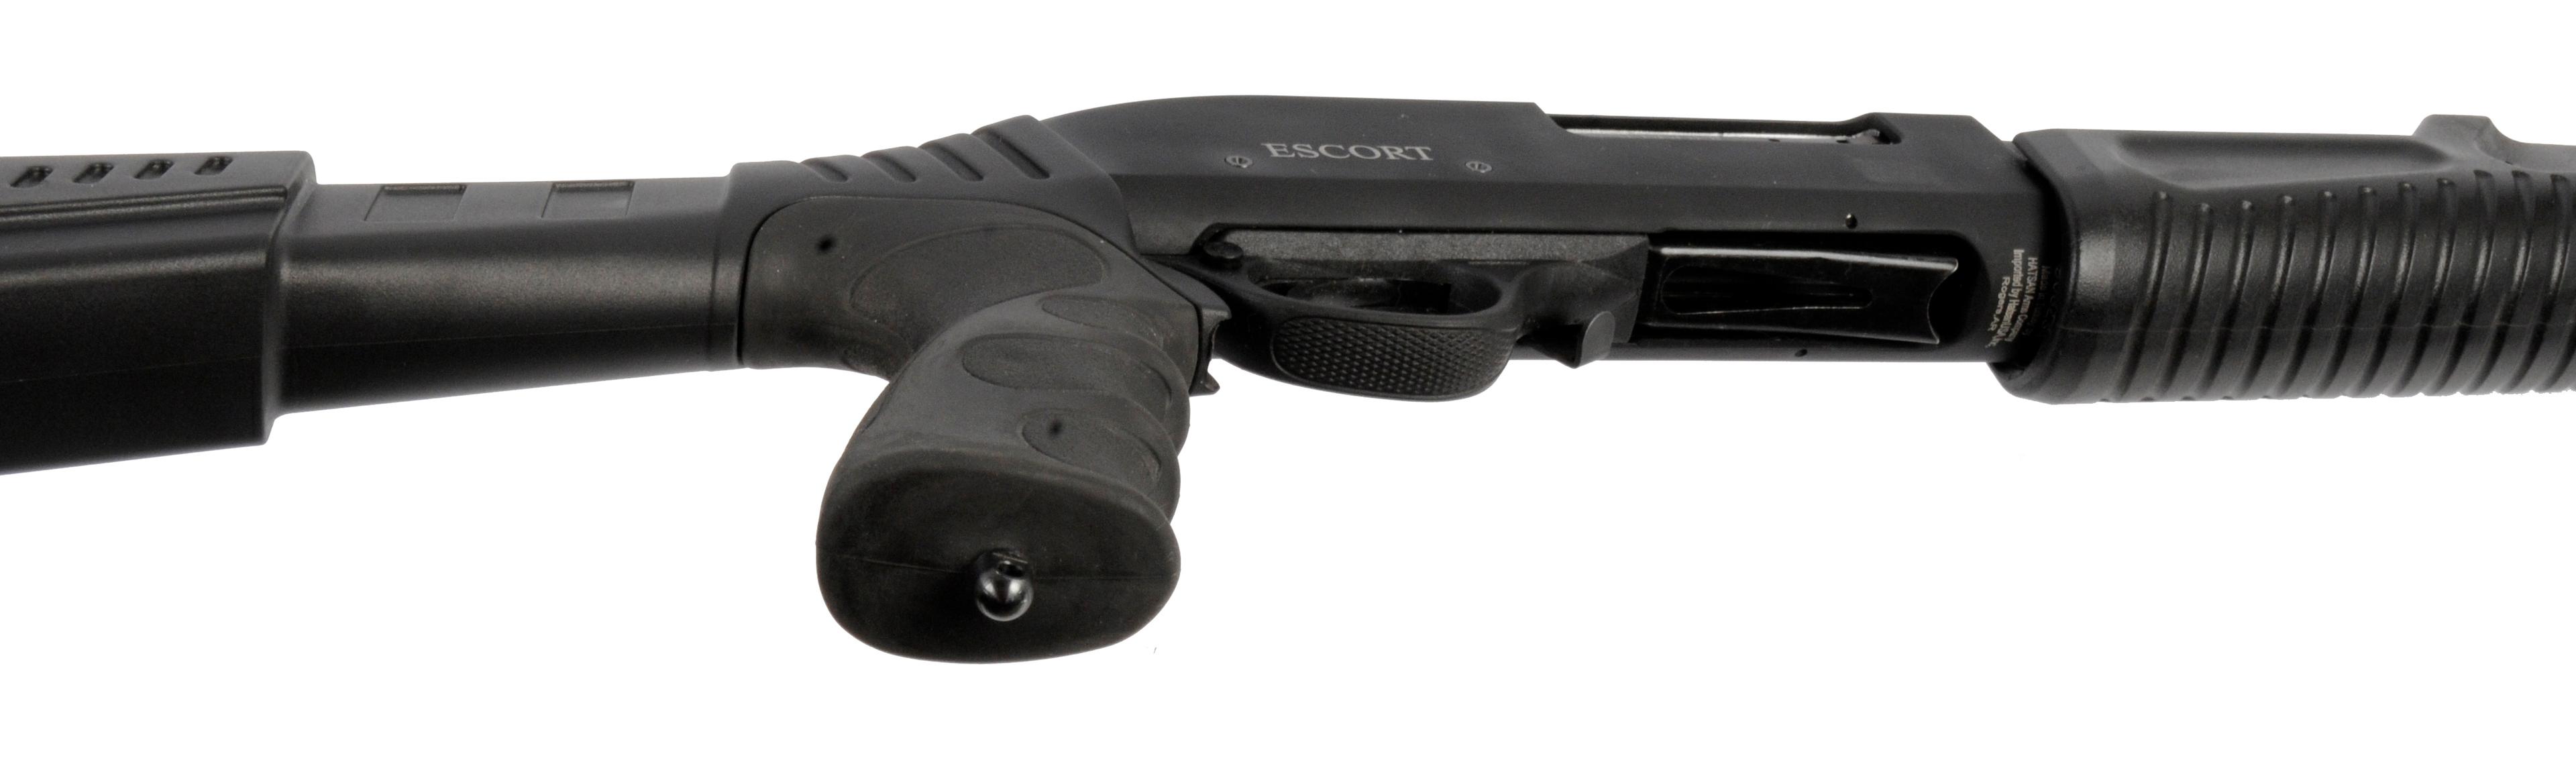 Hatsan Escort 12 Gauge Pump-action Shotgun FFL Required: 908234  (A1)